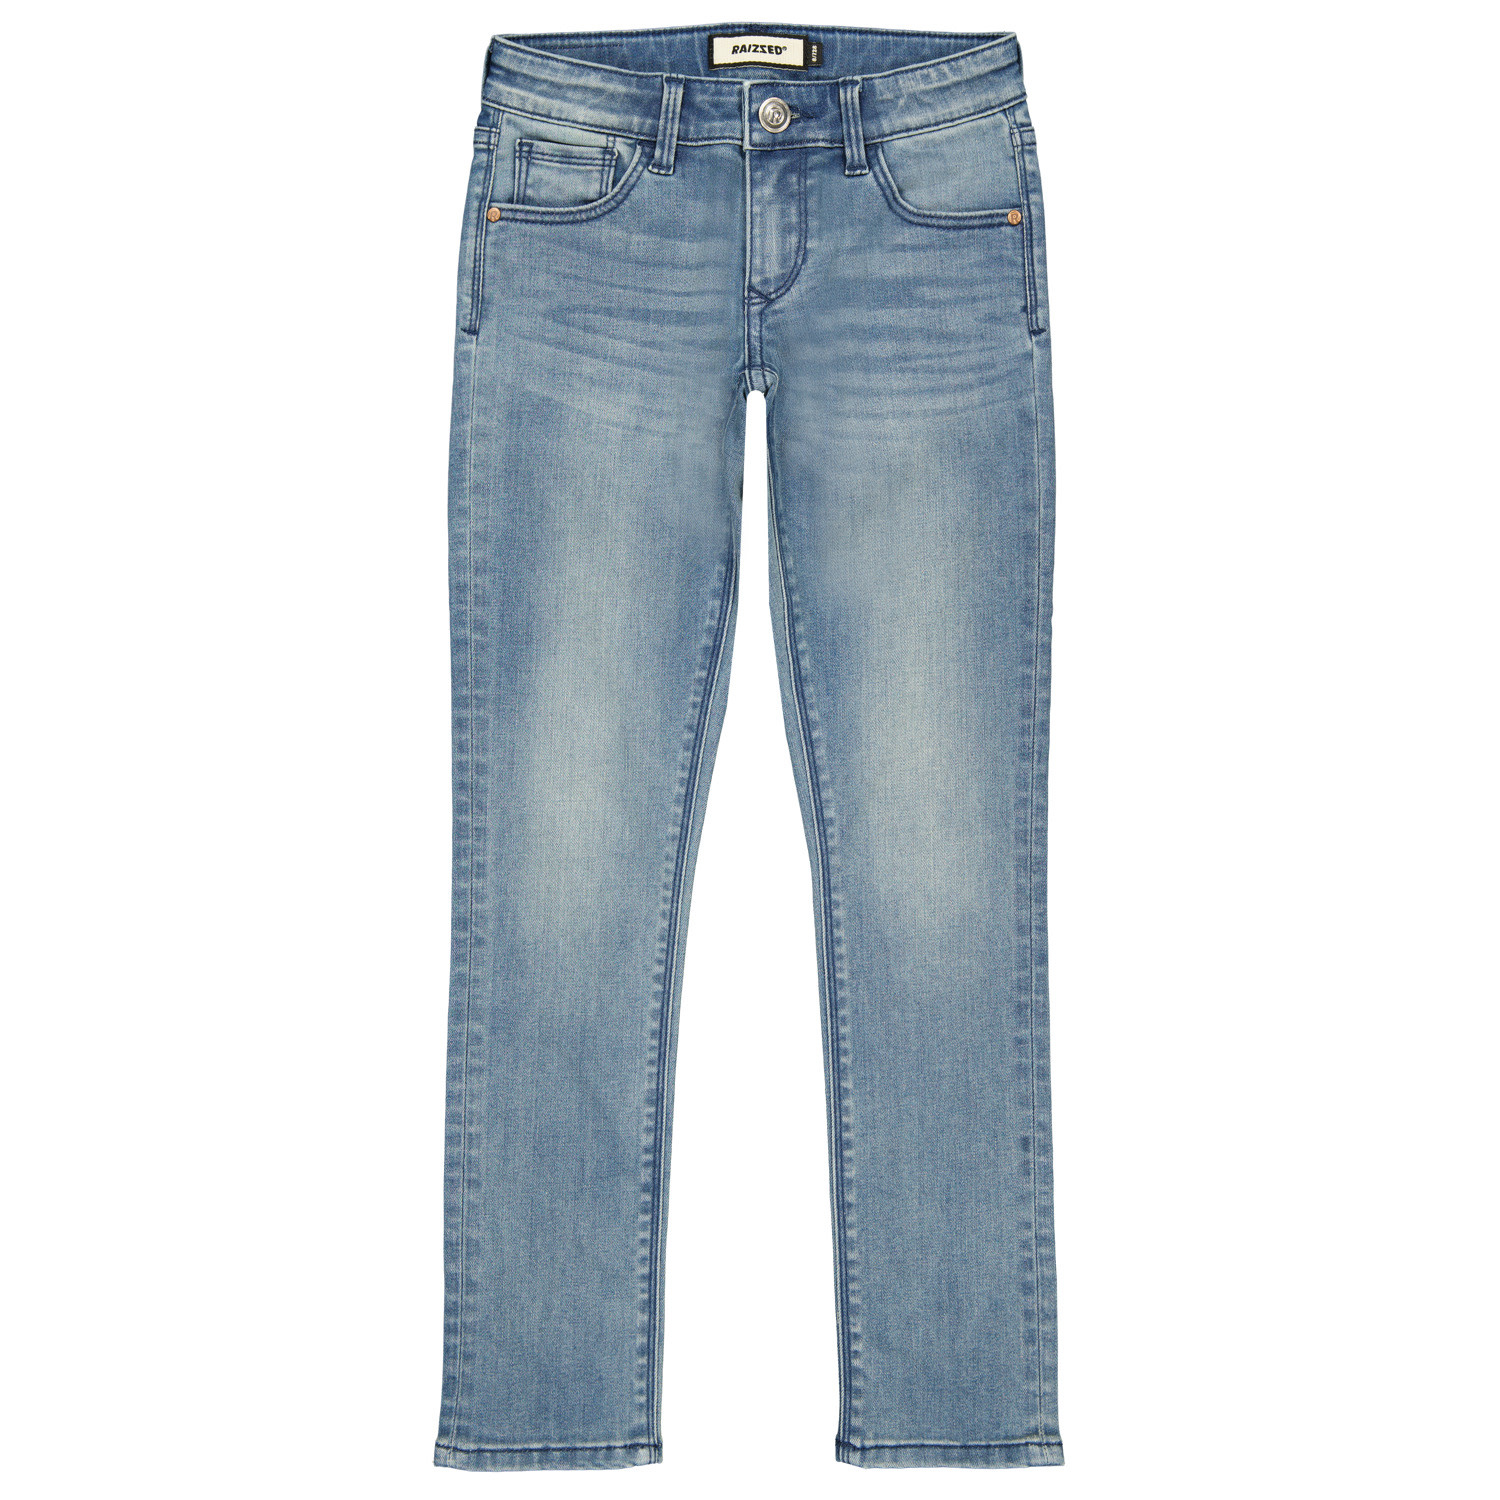 Afbeelding van Raizzed Meiden jeans lismore skinny fit light blue